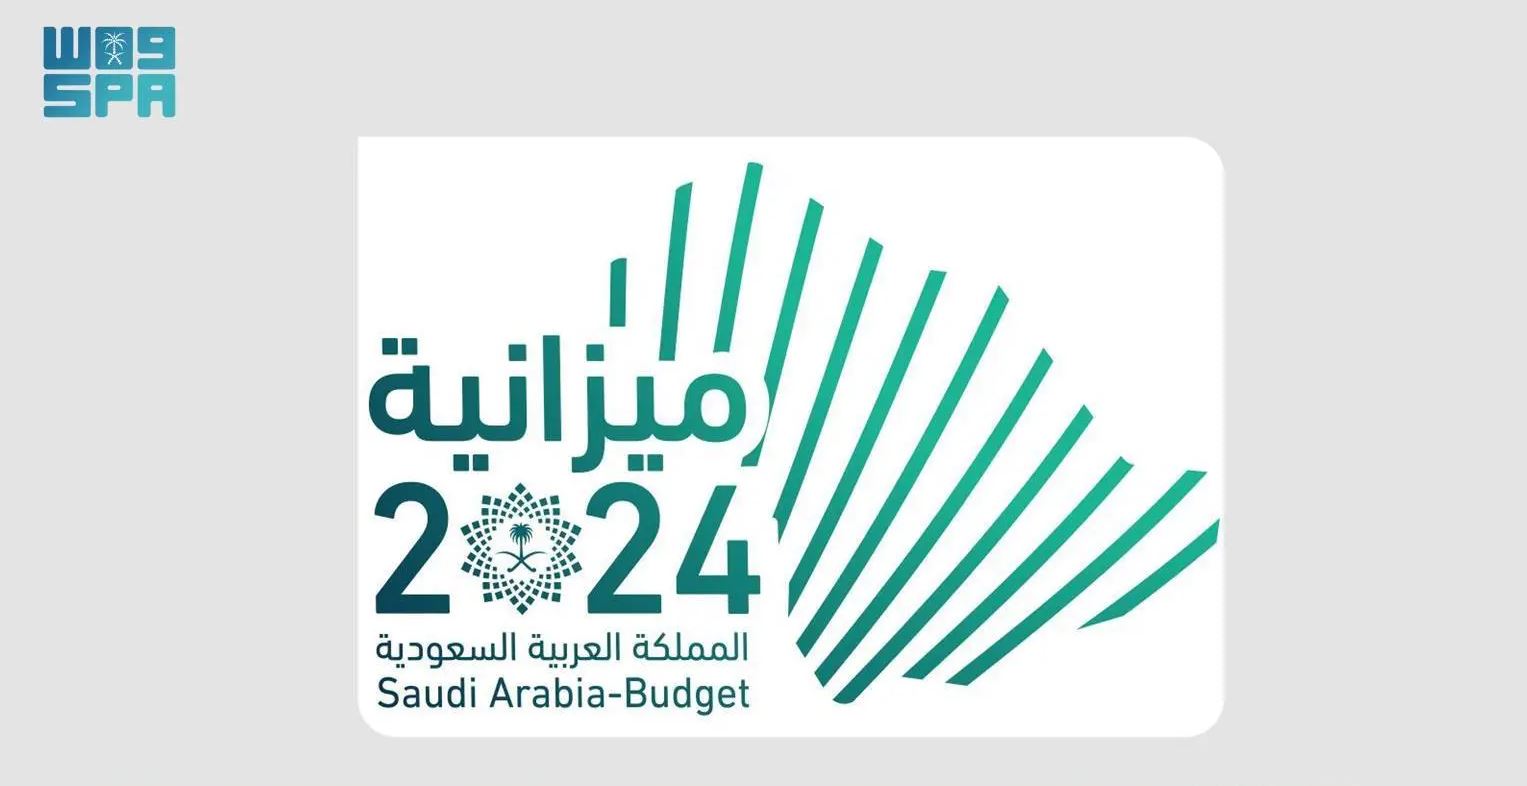 وزارة المالية السعودية تعلن البيان التمهيدي لميزانية العام المالي 2024م بنفقات تقدر بـ 1.251 مليار ريال وإيرادات بـ 1.172 مليار ريال